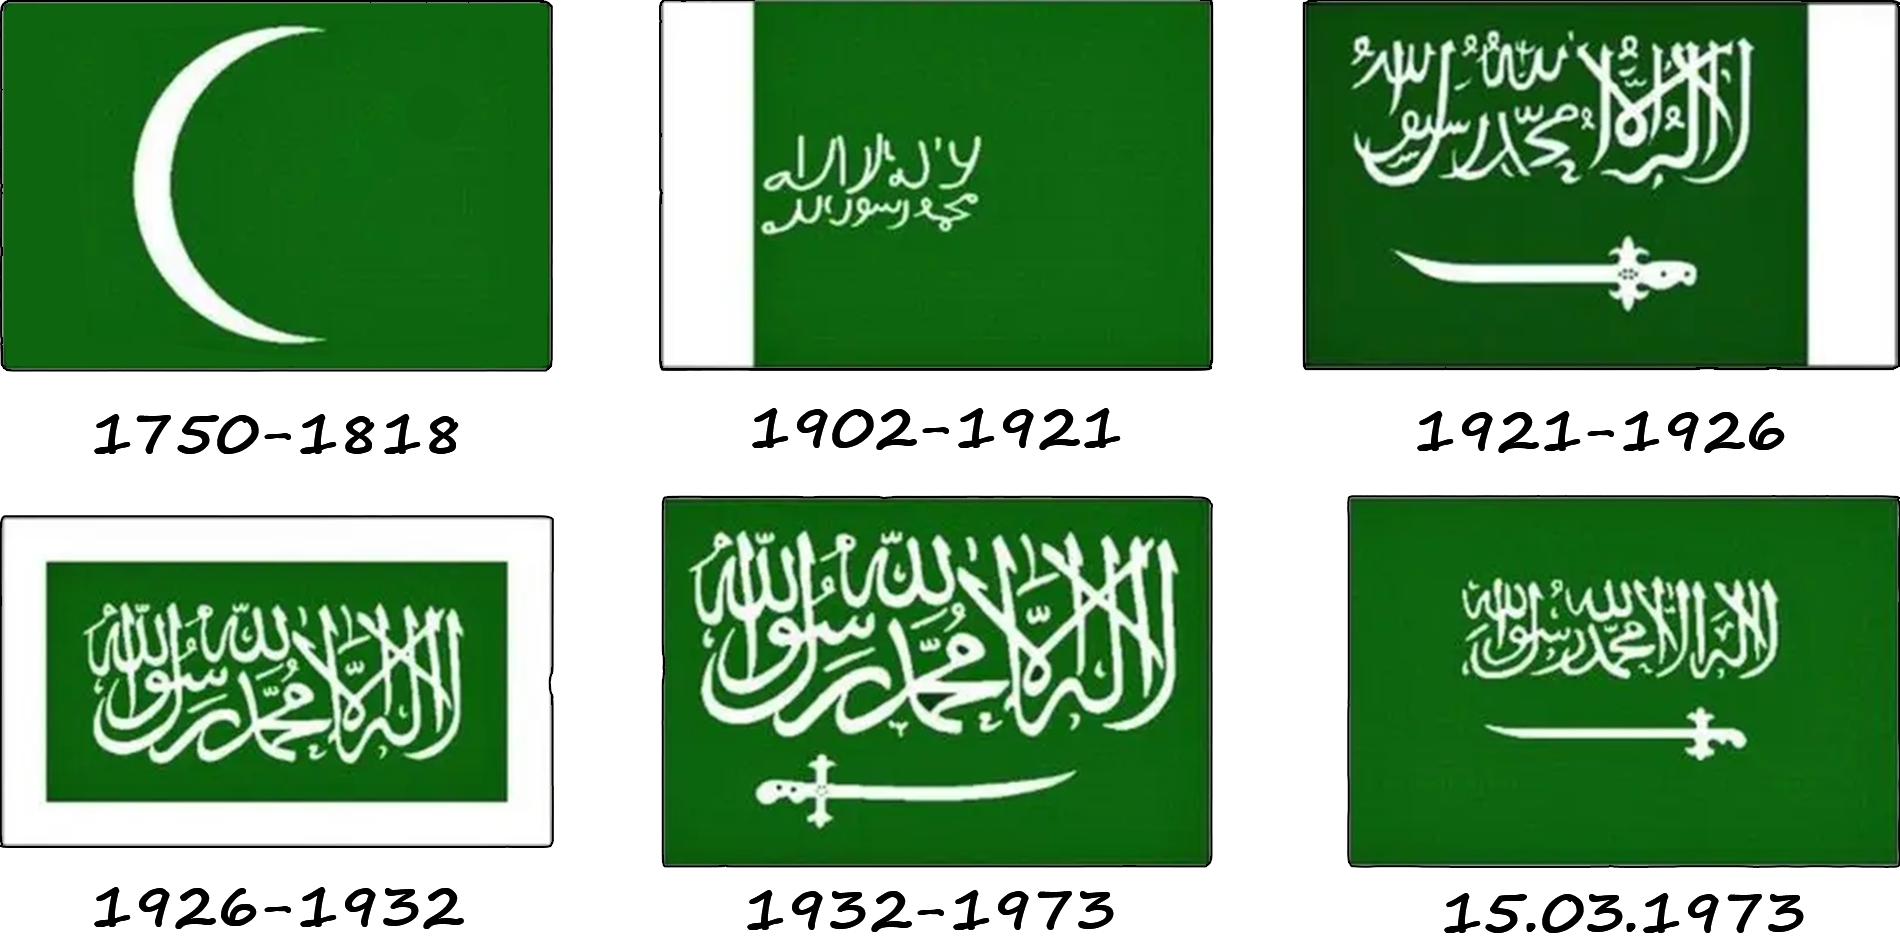 Як змінювався прапор Саудівської Аравії? Історія прапору